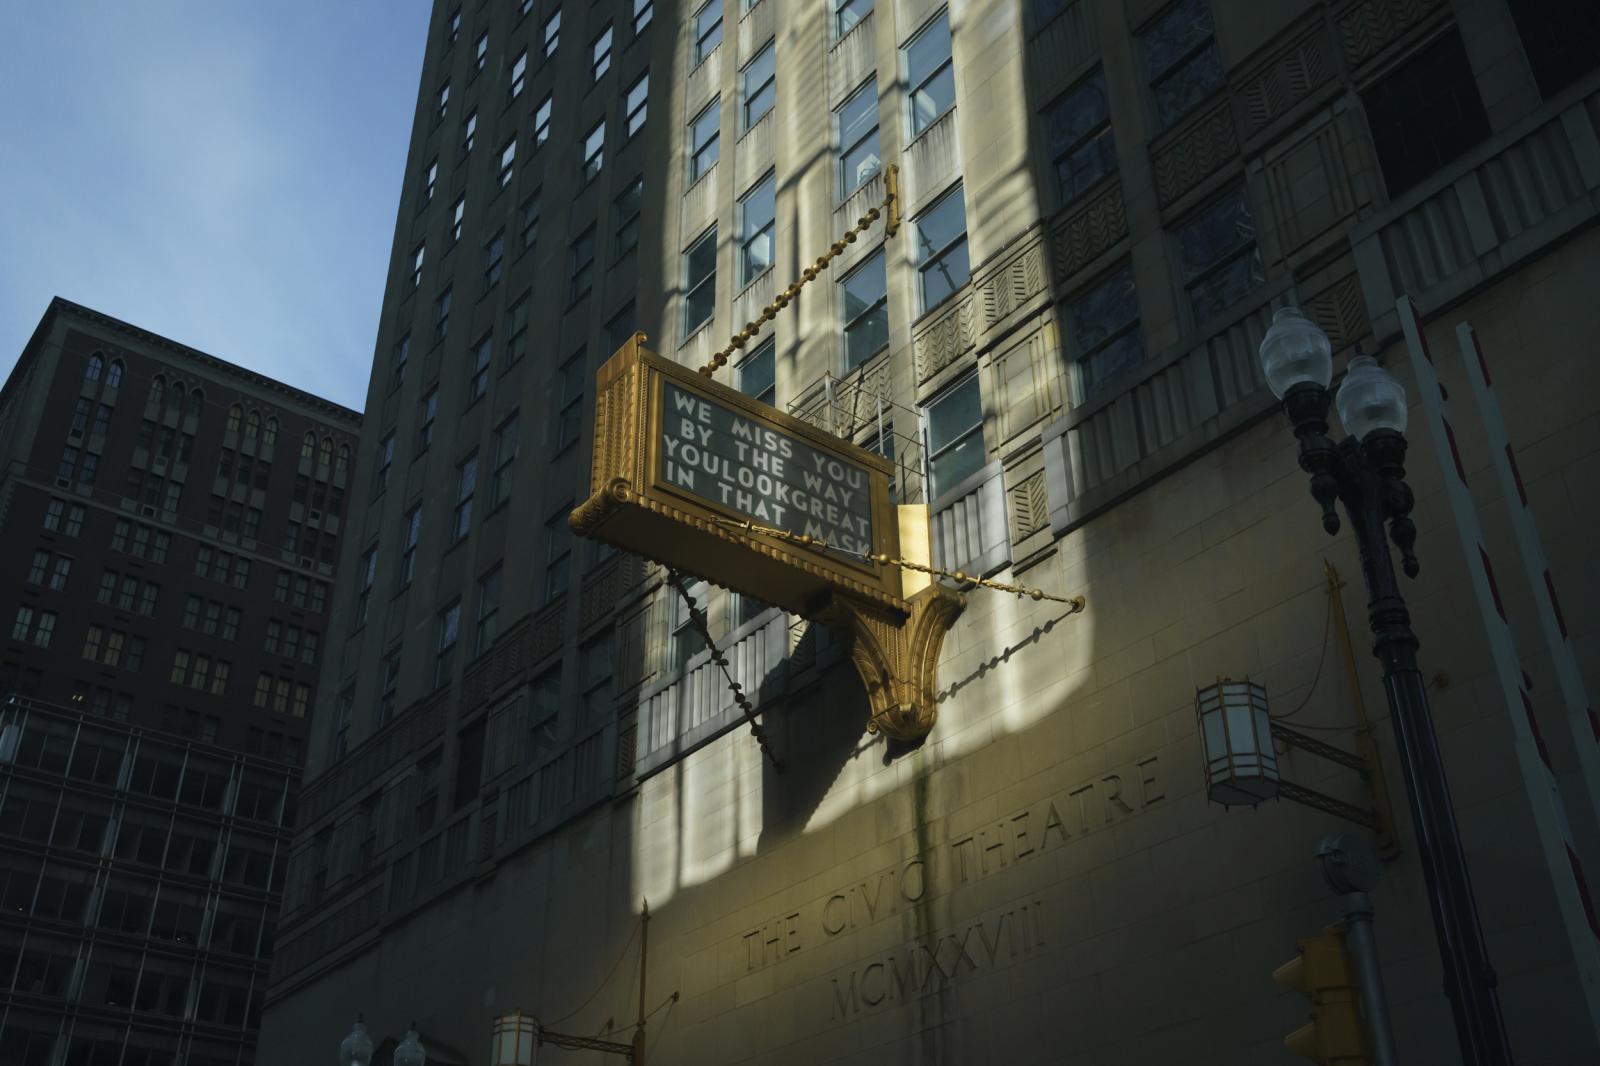 Portfolio - A beam of sunlight through buildings illuminates a sign...